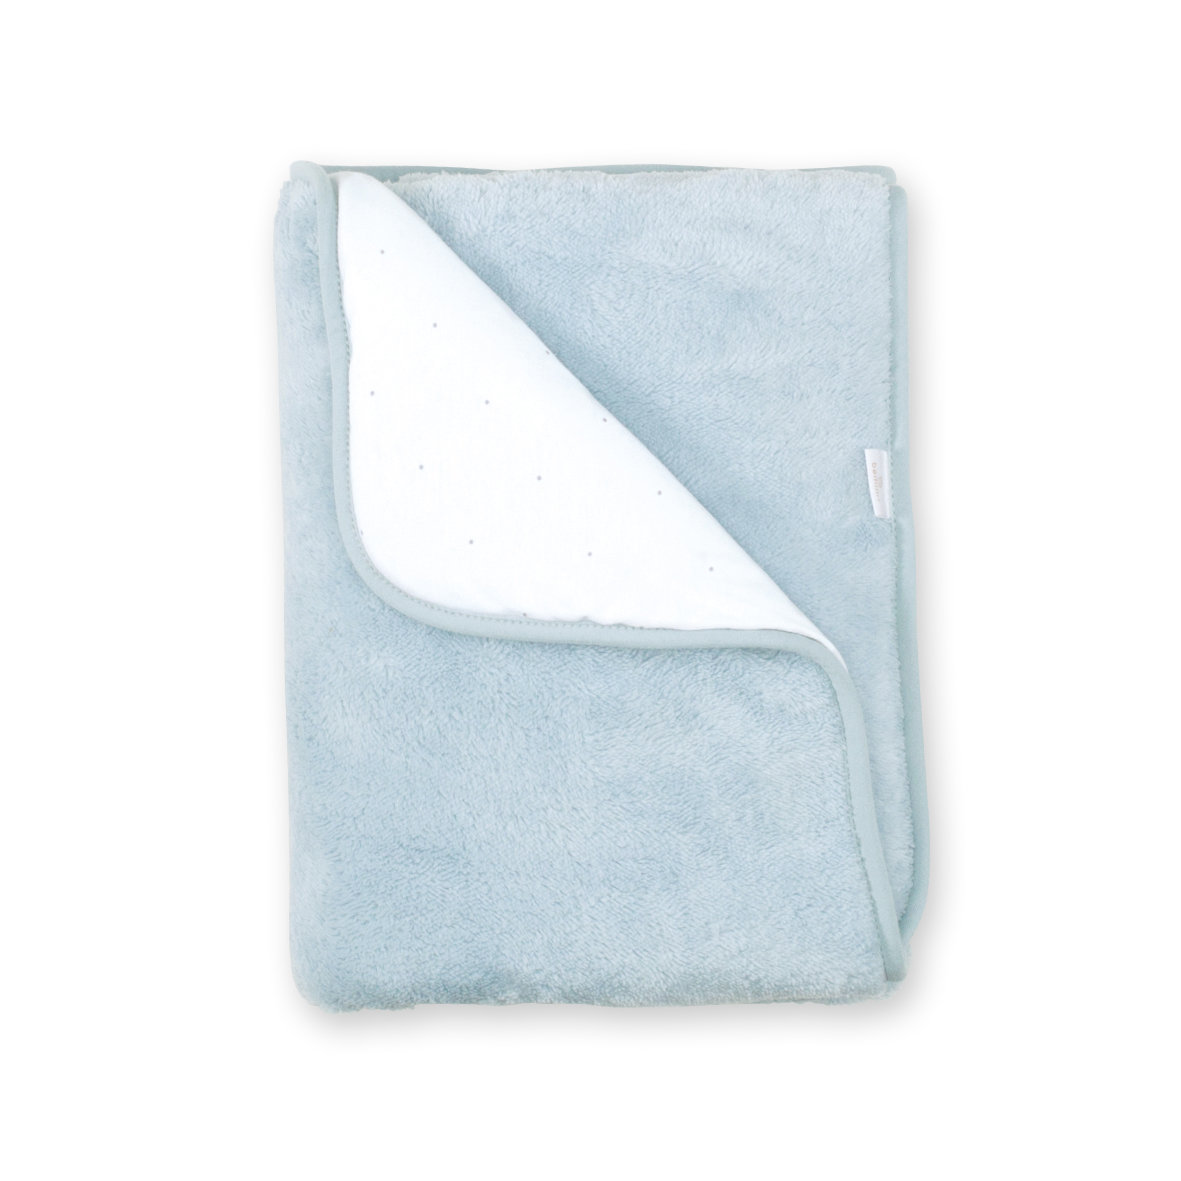 Blanket Pady jersey + softy 75x100cm CHOUX Blue grey tog 3